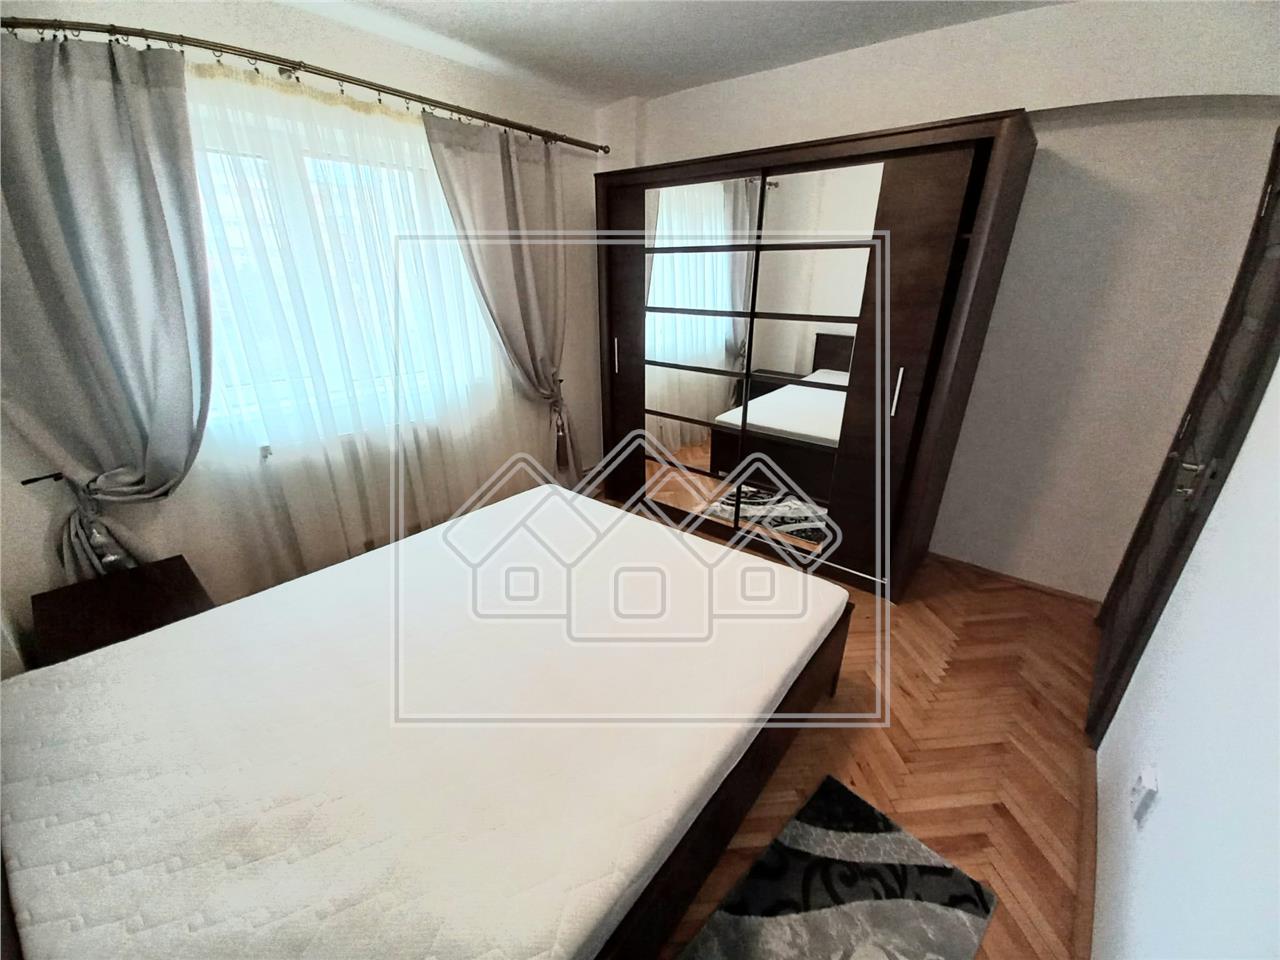 Apartament de inchiriat in Alba Iulia - 3 camere - 2 bai - zona Cetate